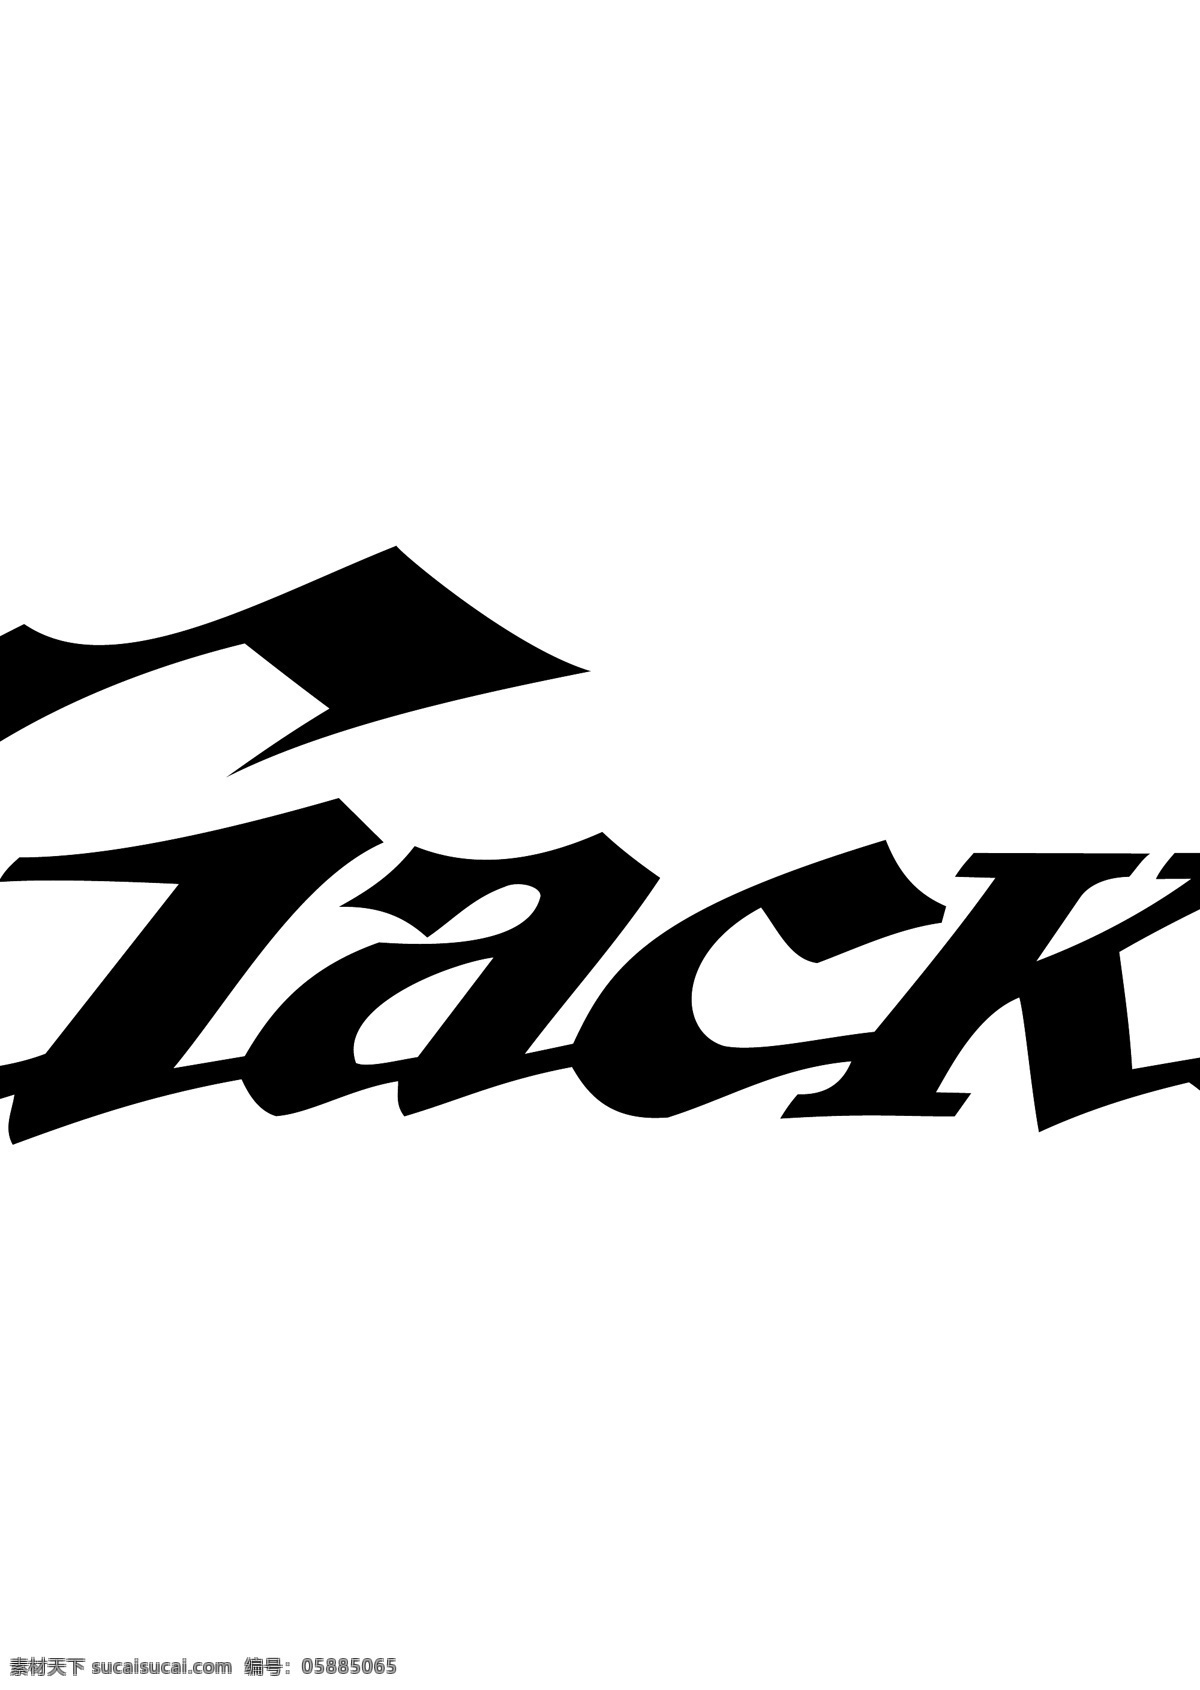 gackt logo大全 logo 设计欣赏 商业矢量 矢量下载 音乐 公司 标志 标志设计 欣赏 网页矢量 矢量图 其他矢量图